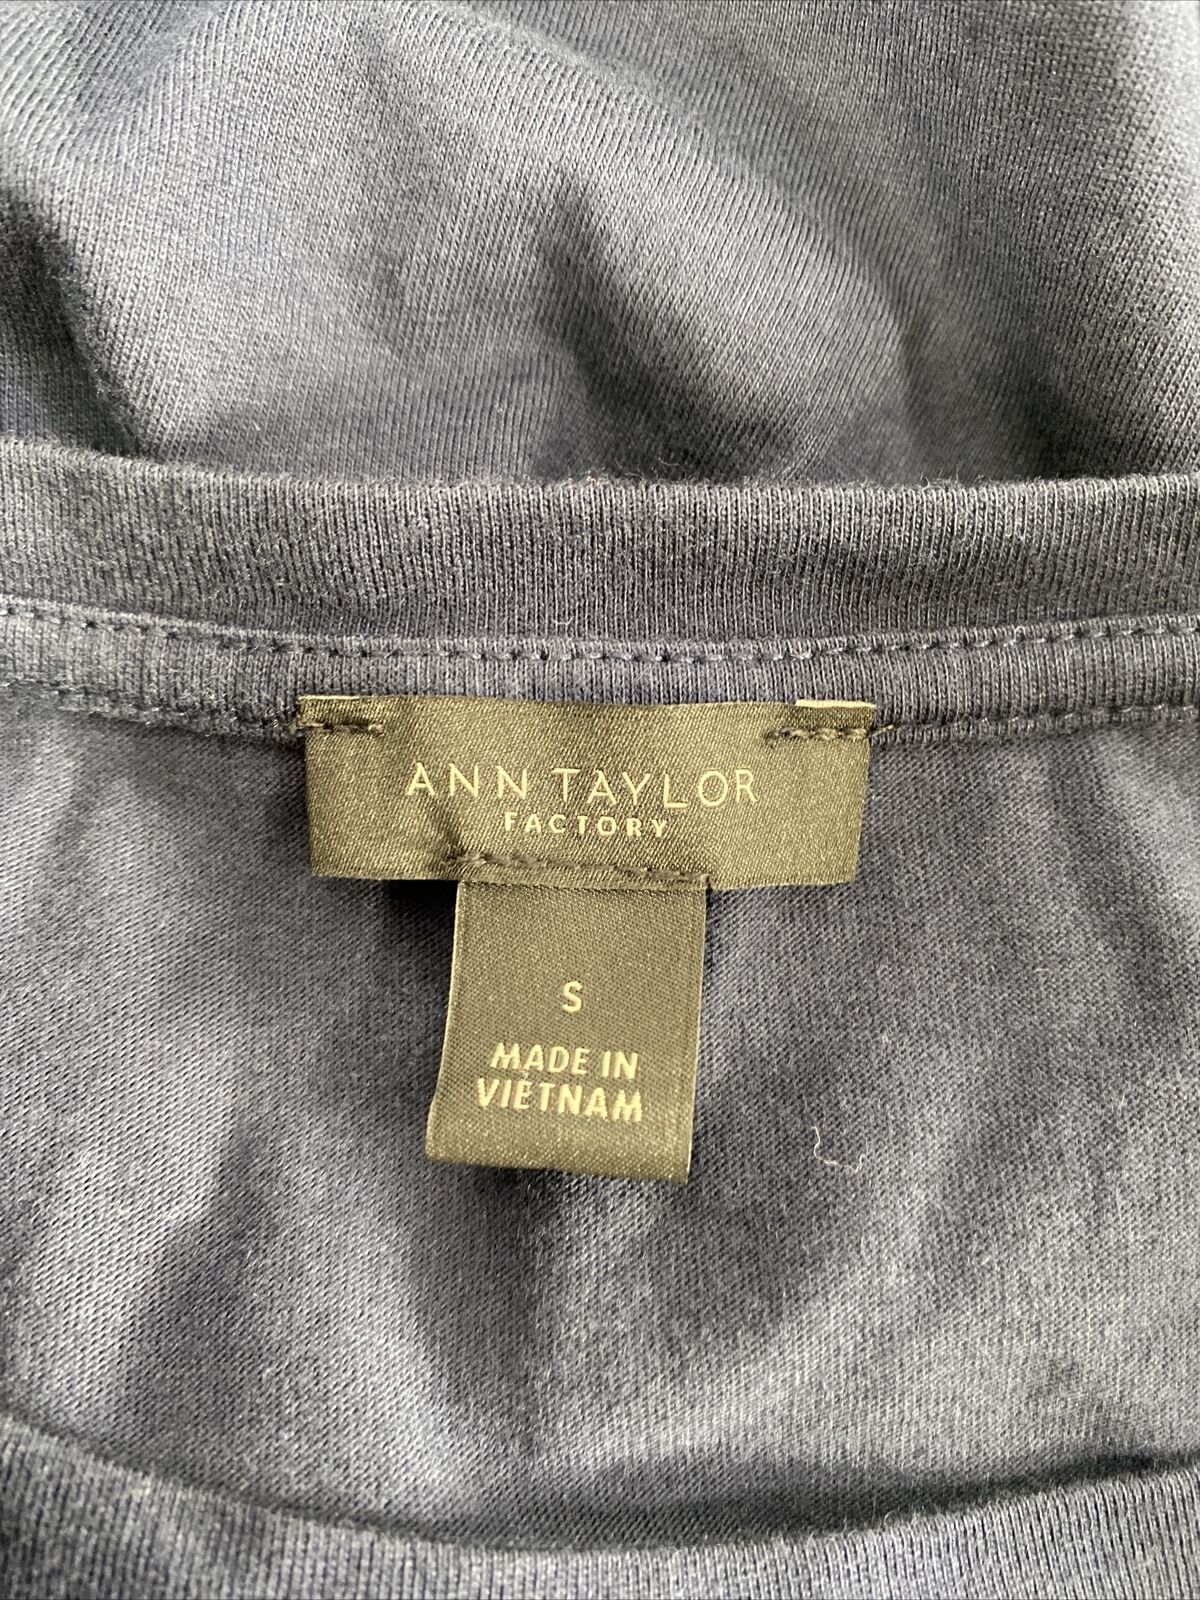 Ann Taylor Women's Blue Short Textured Sleeve T-Shirt - S